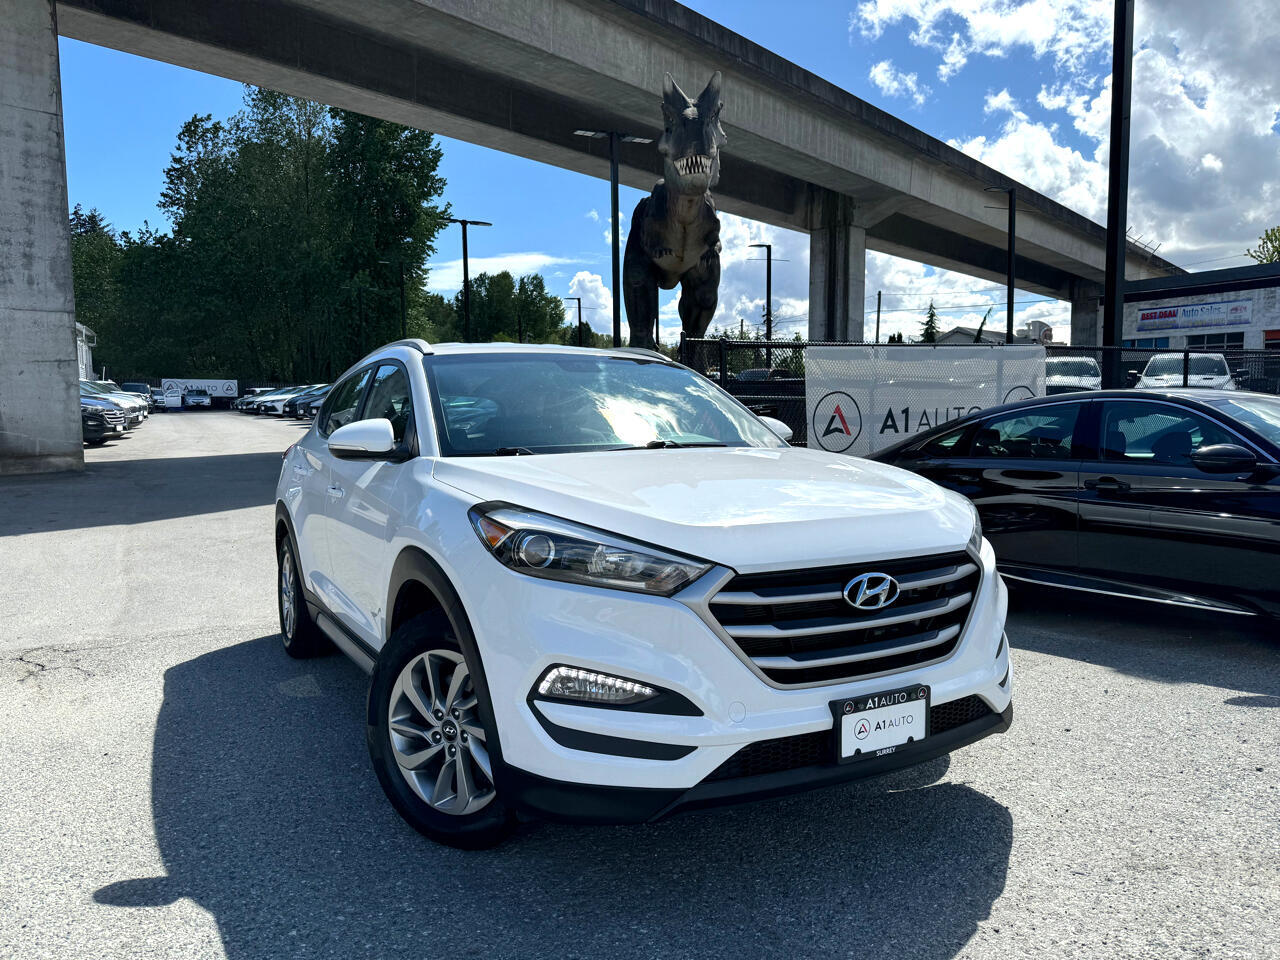 2018 Hyundai Tucson GLS AWD - A/C, Alloy Wheels, CarPlay